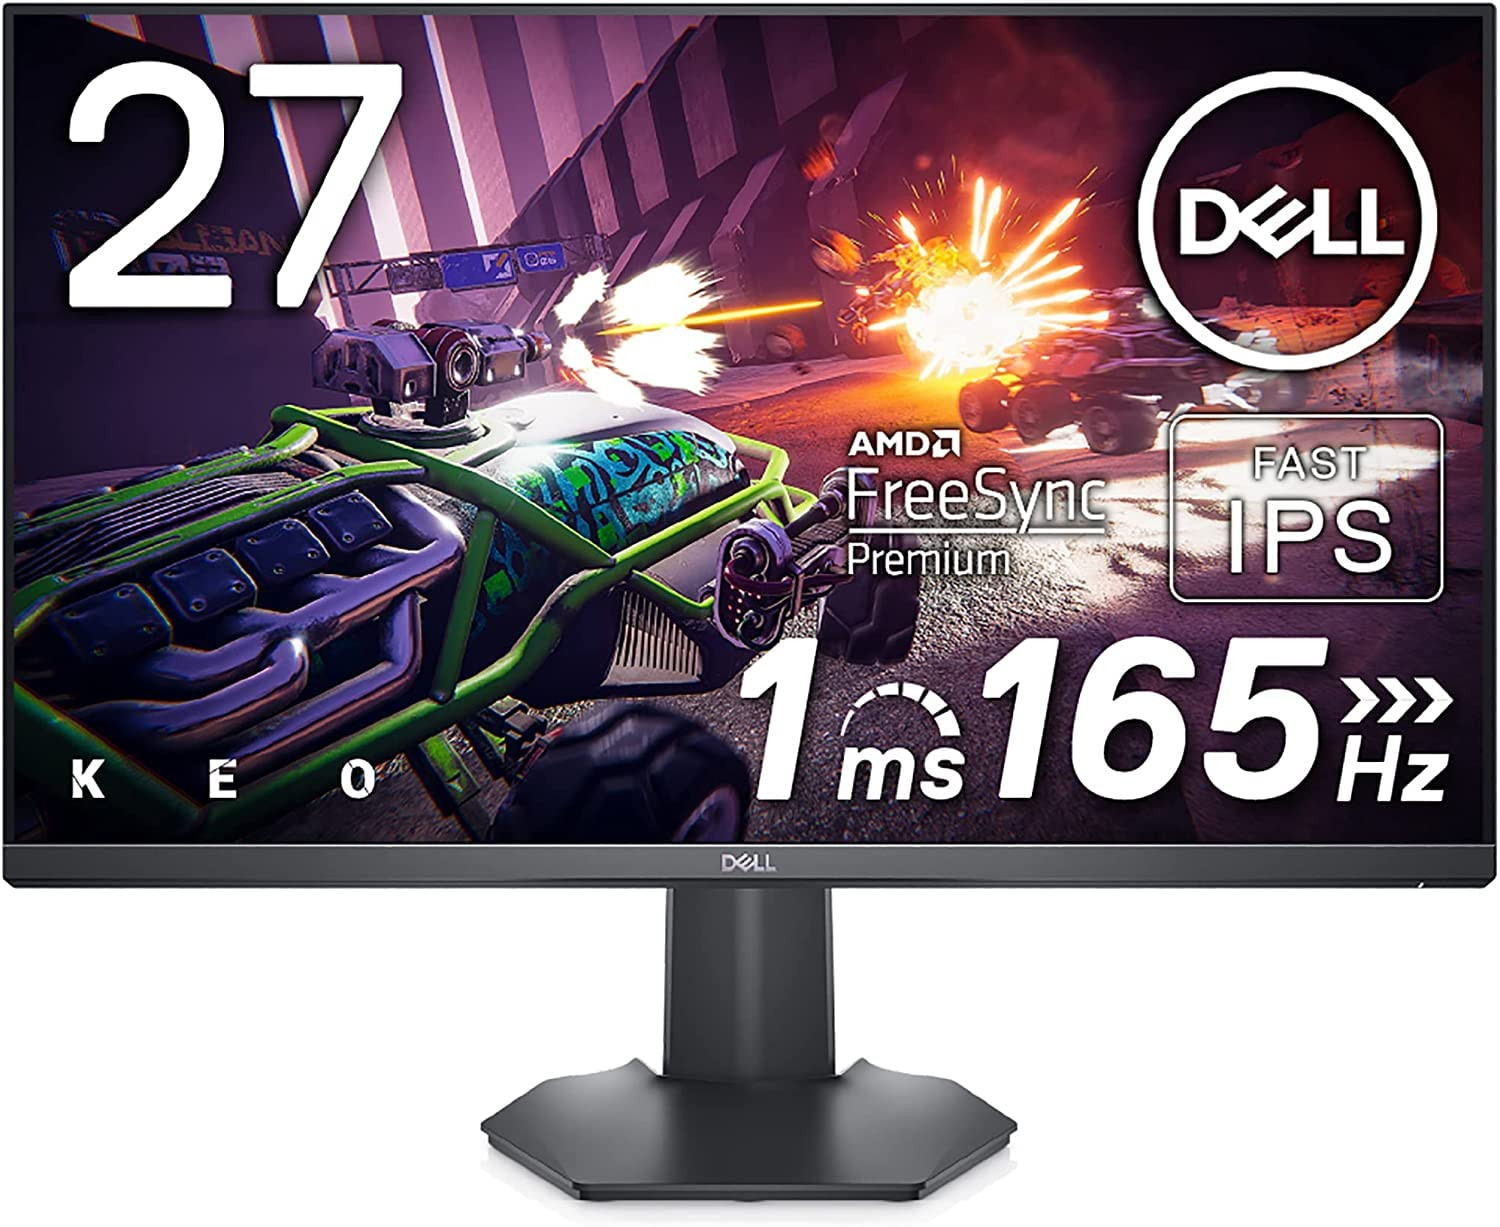 Dell ra mắt màn hình dành cho game thủ: Dell G2722HS